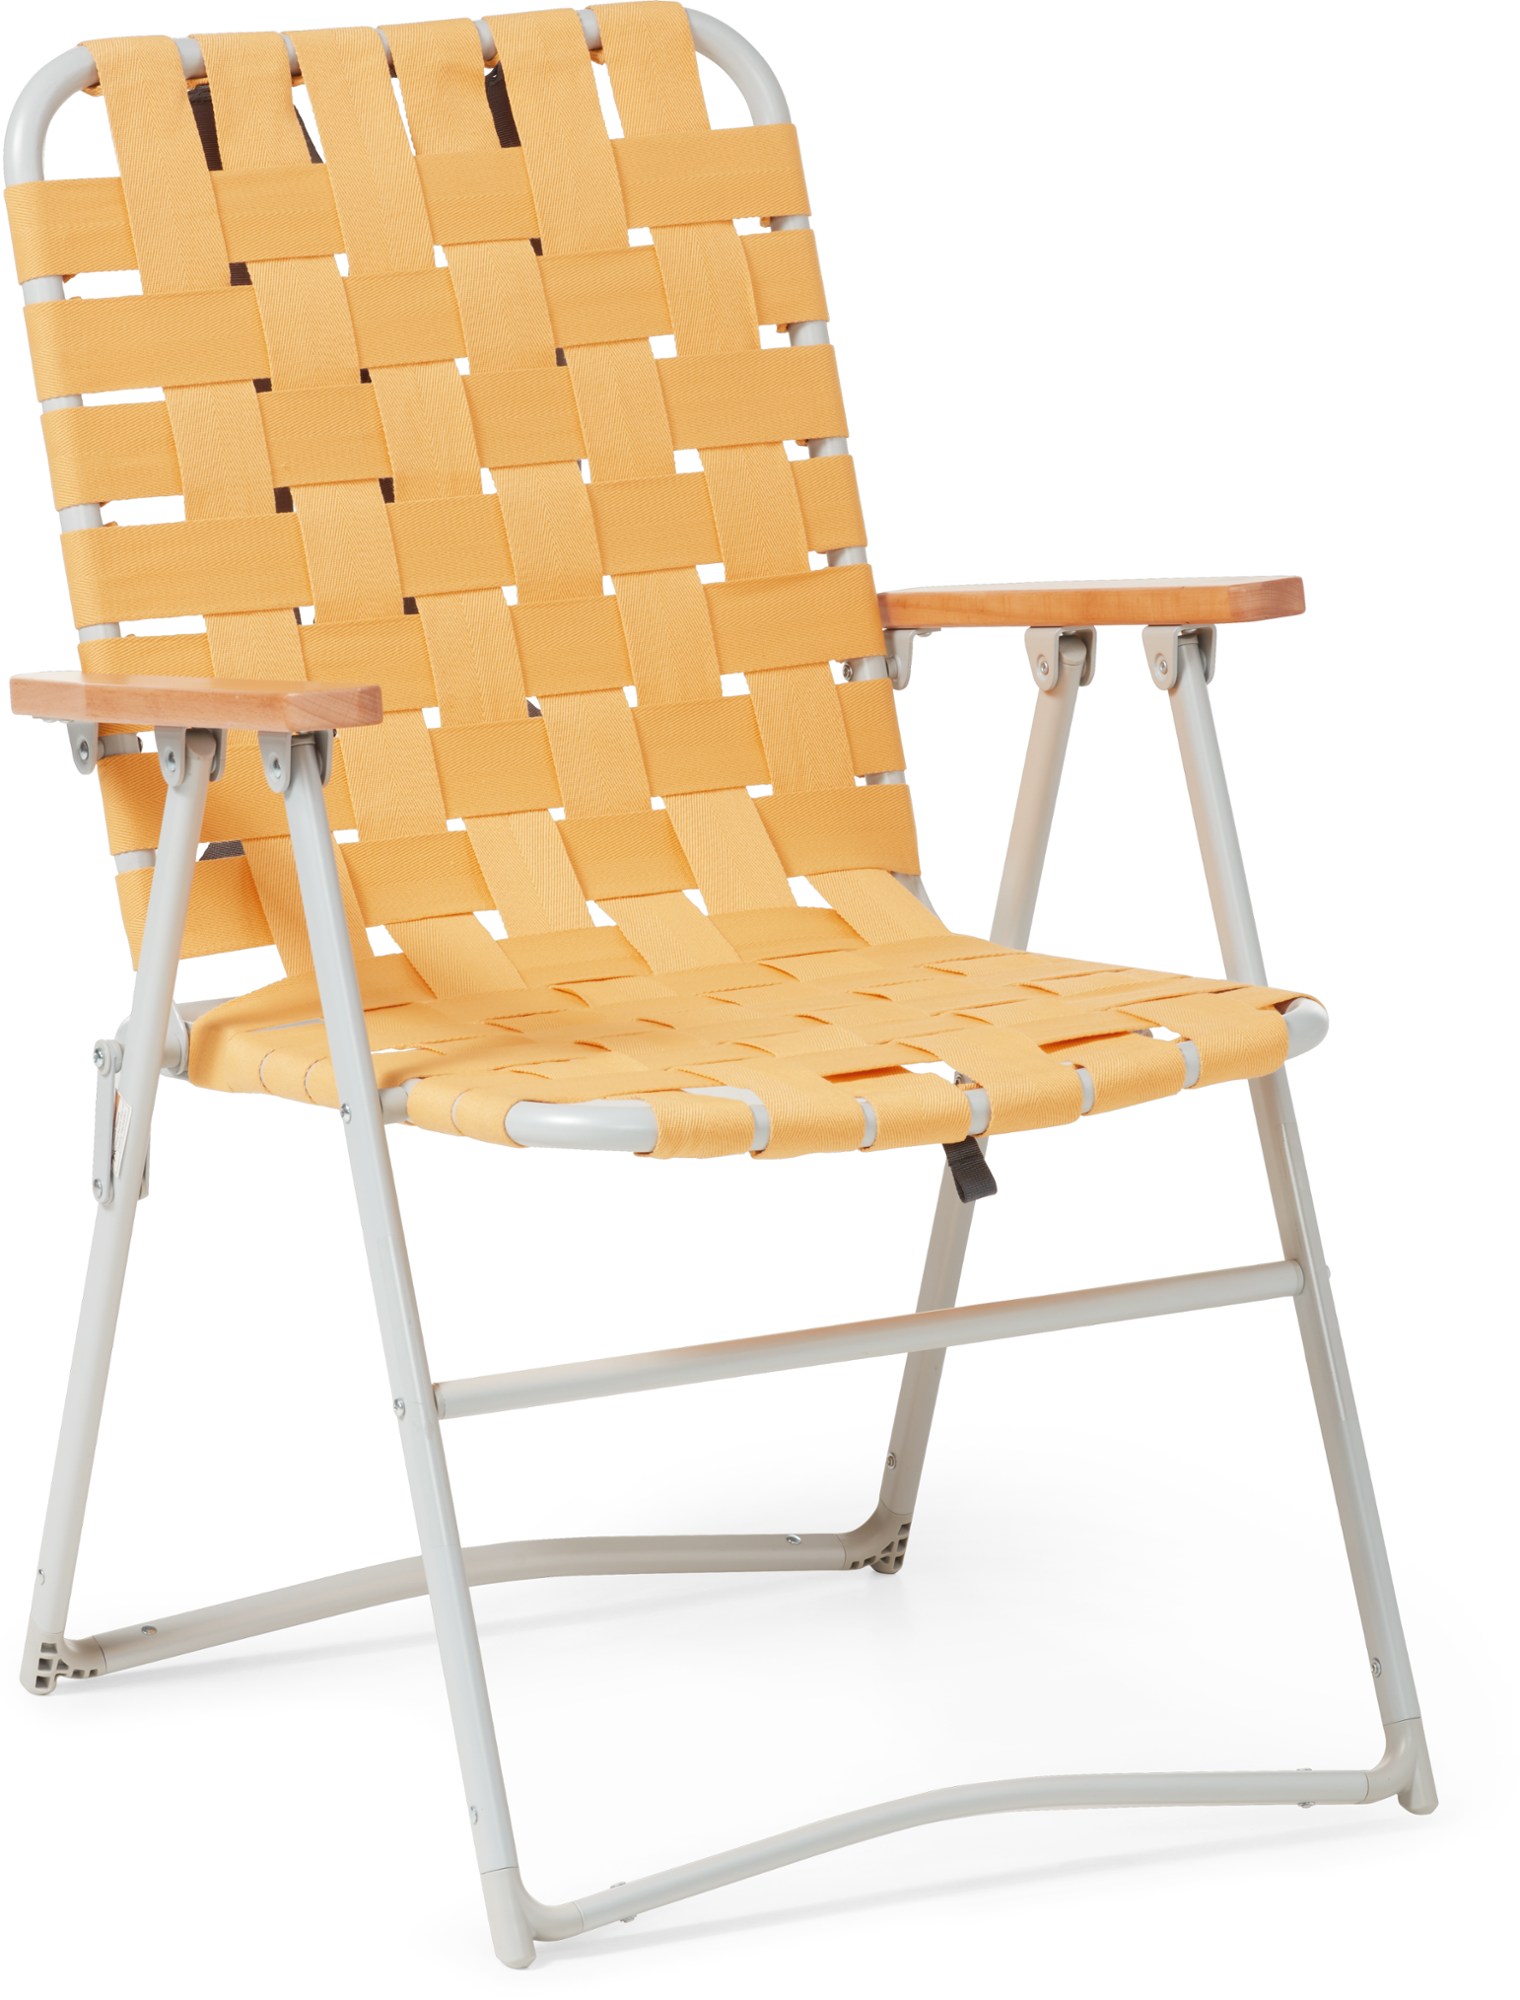 Классический садовый стул Outward REI Co-op, желтый большой стул joe milan bean bag плюшевый шезлонг 2 5 фута единорог радуга пена с эффектом памяти мягкие шезлонг стулья для детей взрослых